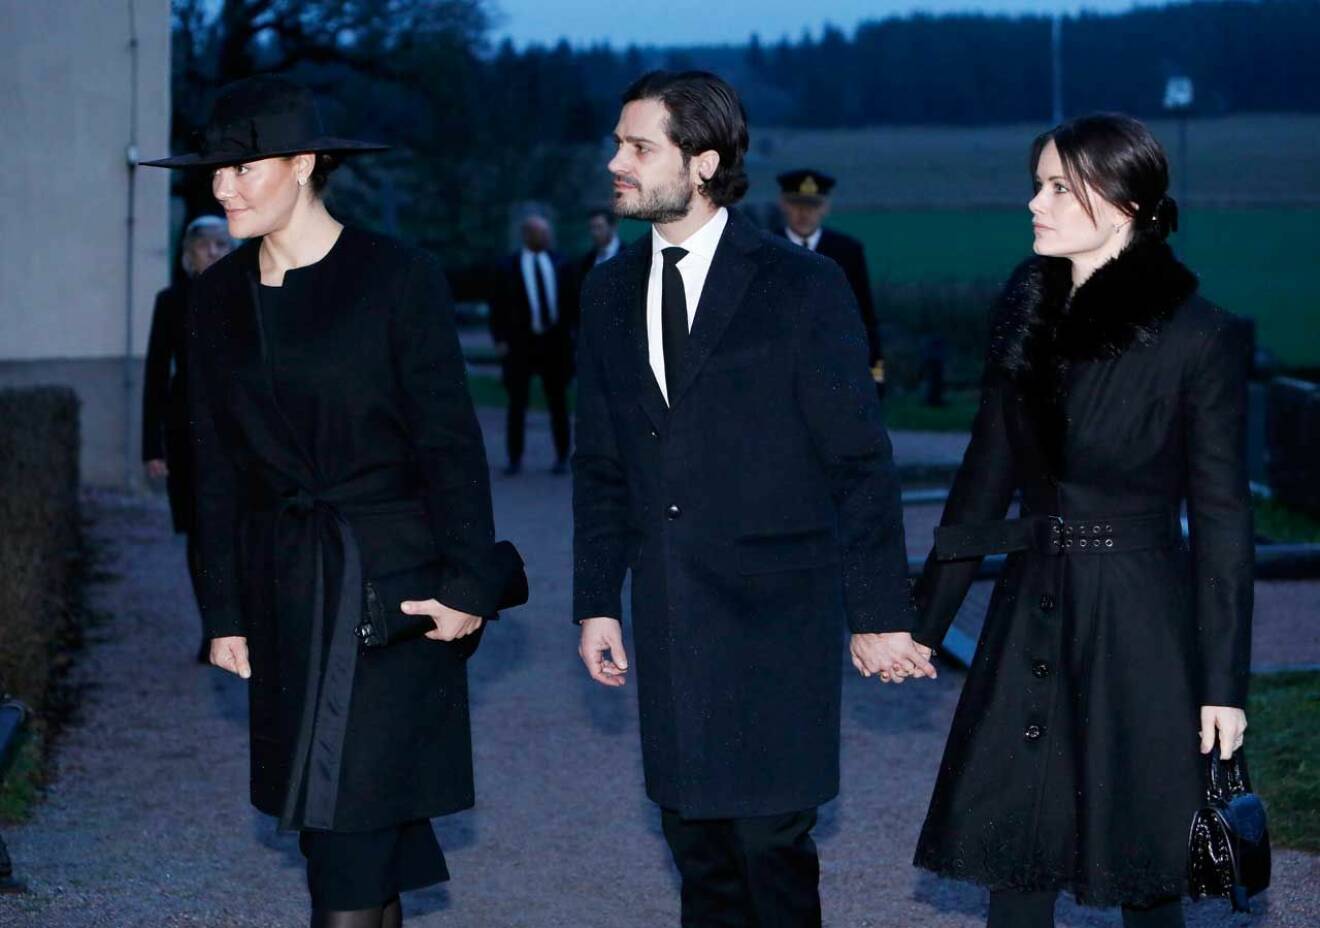 Kronprinsessan Victoria på Oscis Bernadottes begravning i Rasbo kyrkan. Här med prins Carl Philip och prinsessan Sofia, som gick hand i hand.